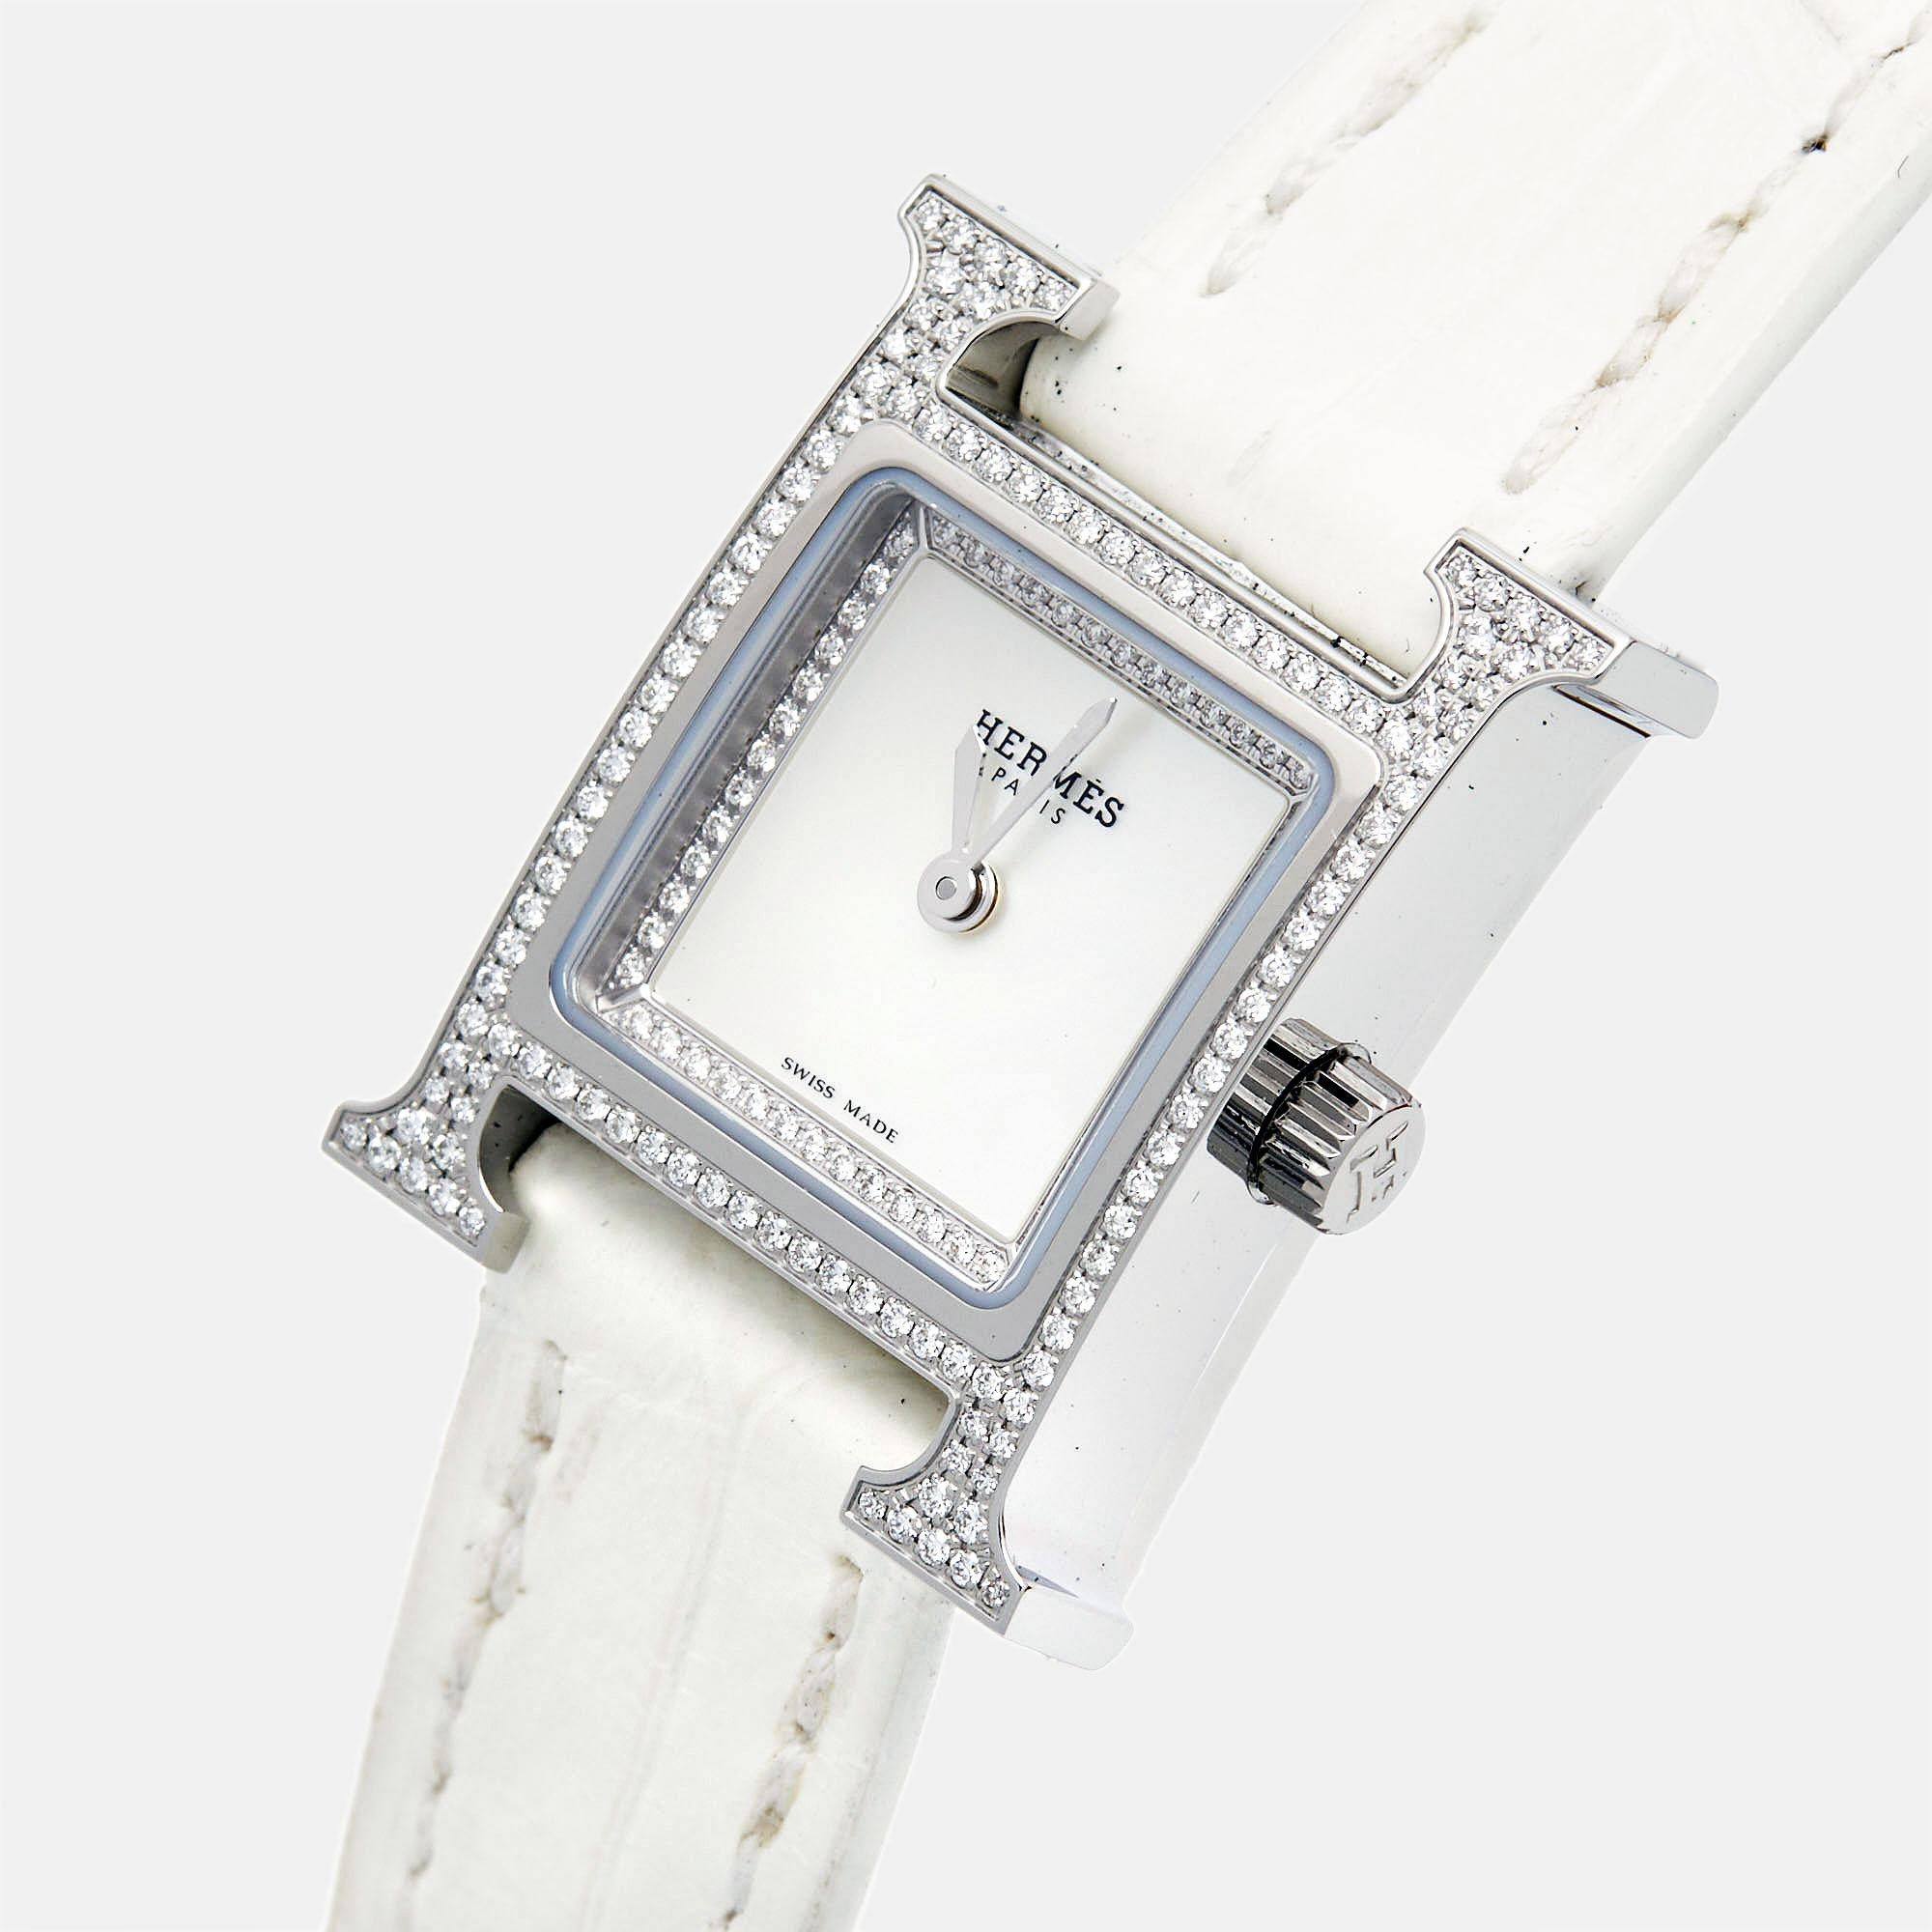 La montre Hermès Heure H est un chef-d'œuvre d'élégance et de luxe. Fabriquée avec une attention méticuleuse aux détails, elle présente un boîtier en acier inoxydable orné de diamants, complété par un superbe cadran en nacre. Le design emblématique